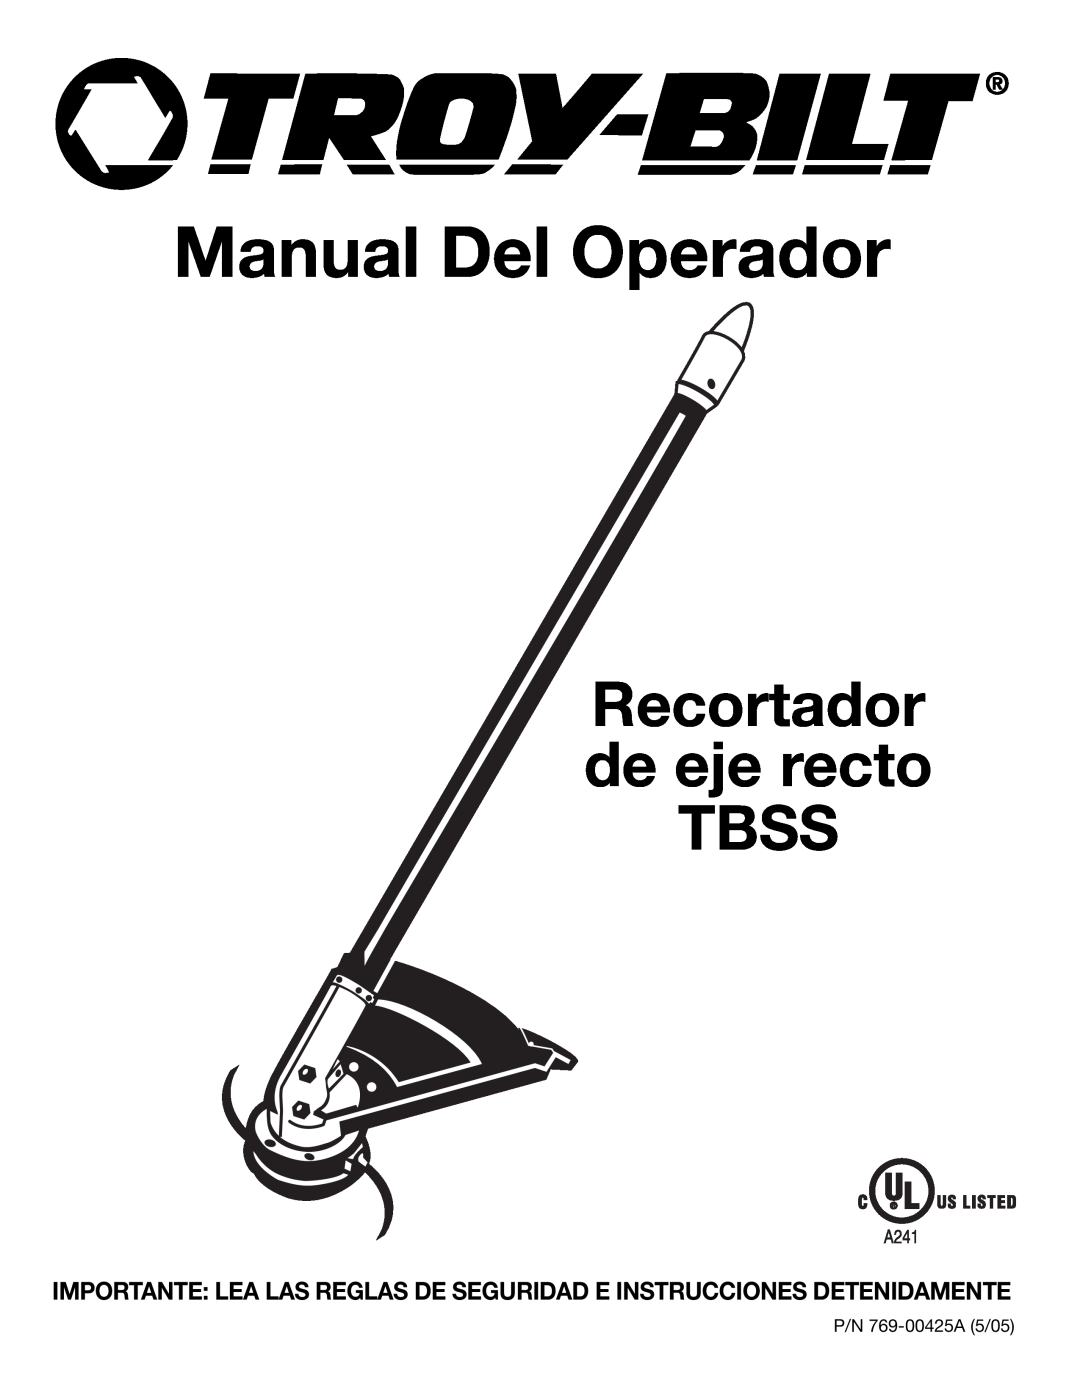 Troy-Bilt 769-00425A manual Manual Del Operador, Recortador de eje recto TBSS 